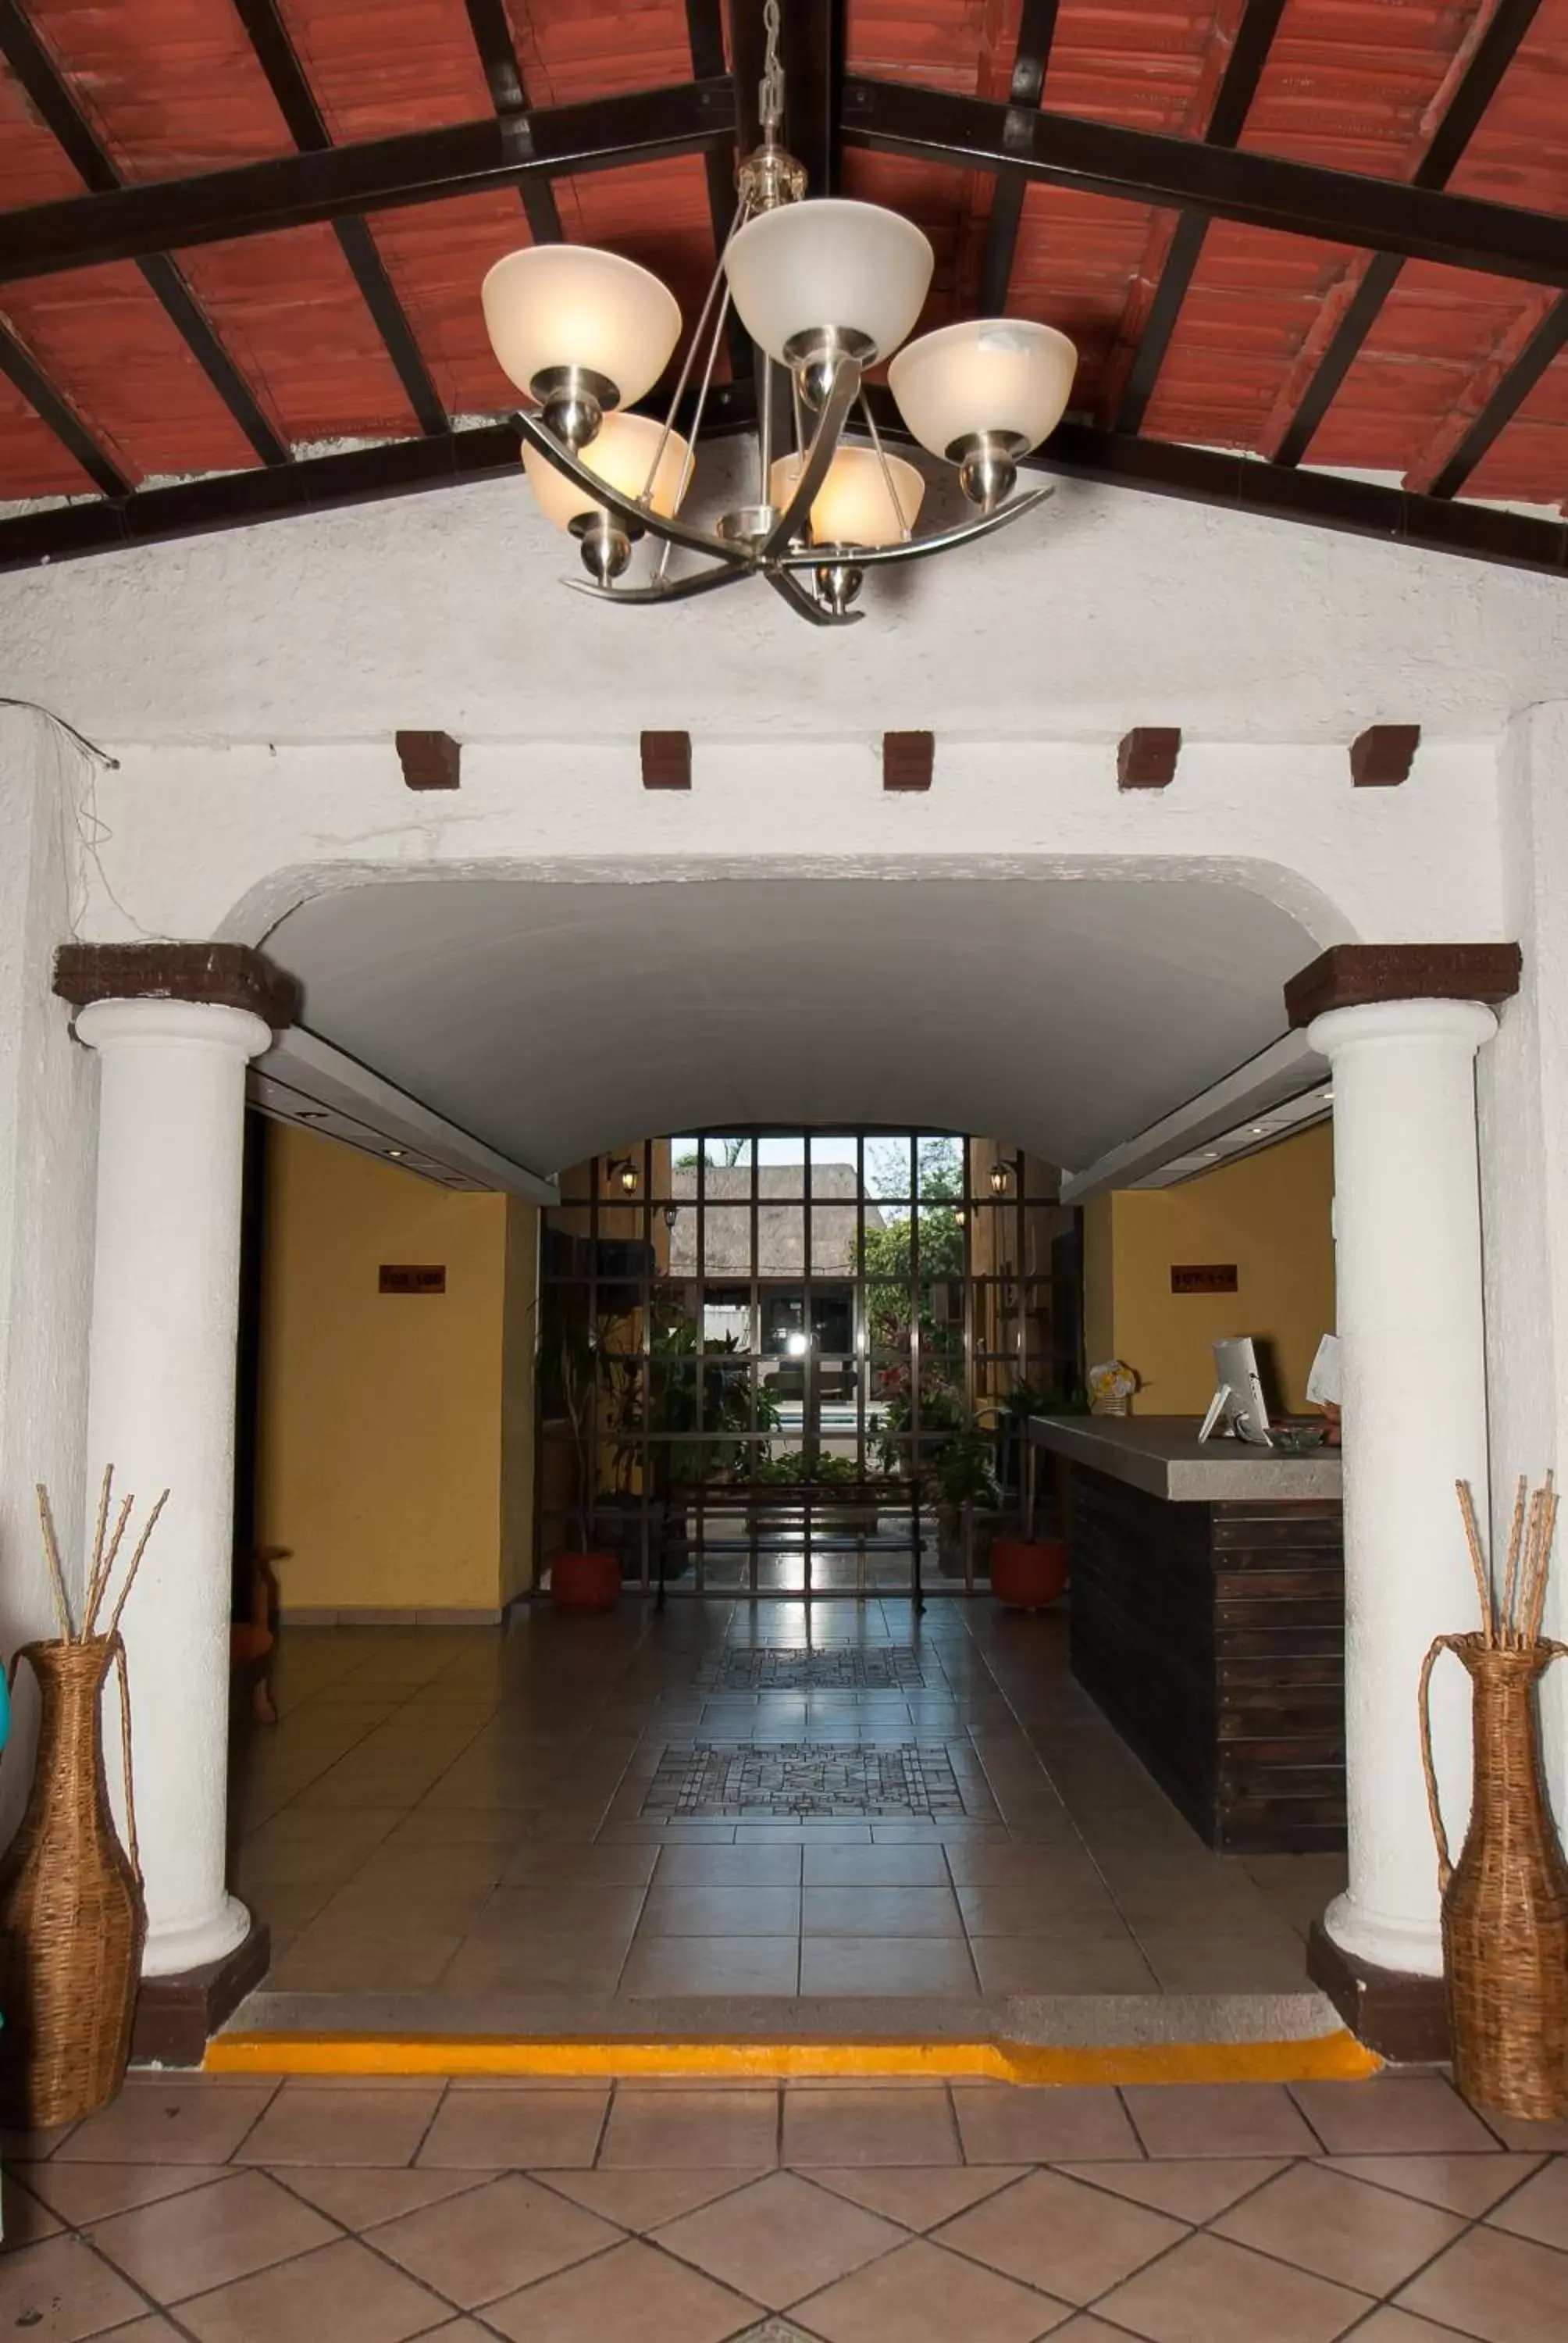 Lobby or reception in Hotel Hacienda Cancun